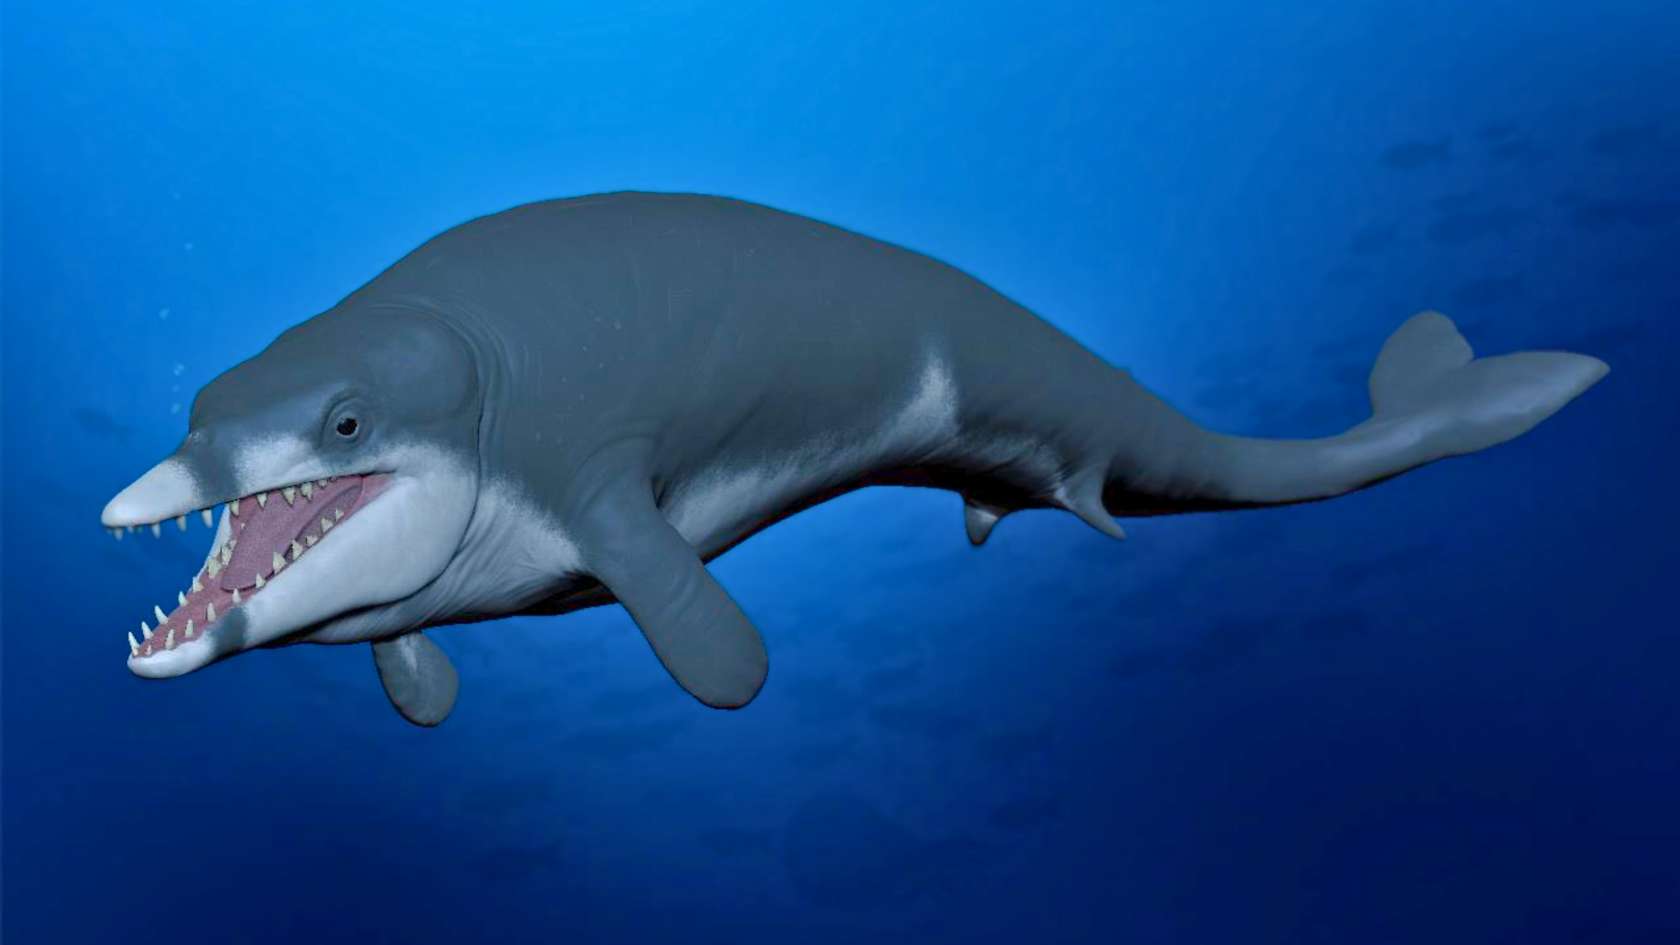 Cette baleine préhistorique a-t-elle rapetissé à cause d’un réchauffement climatique ?